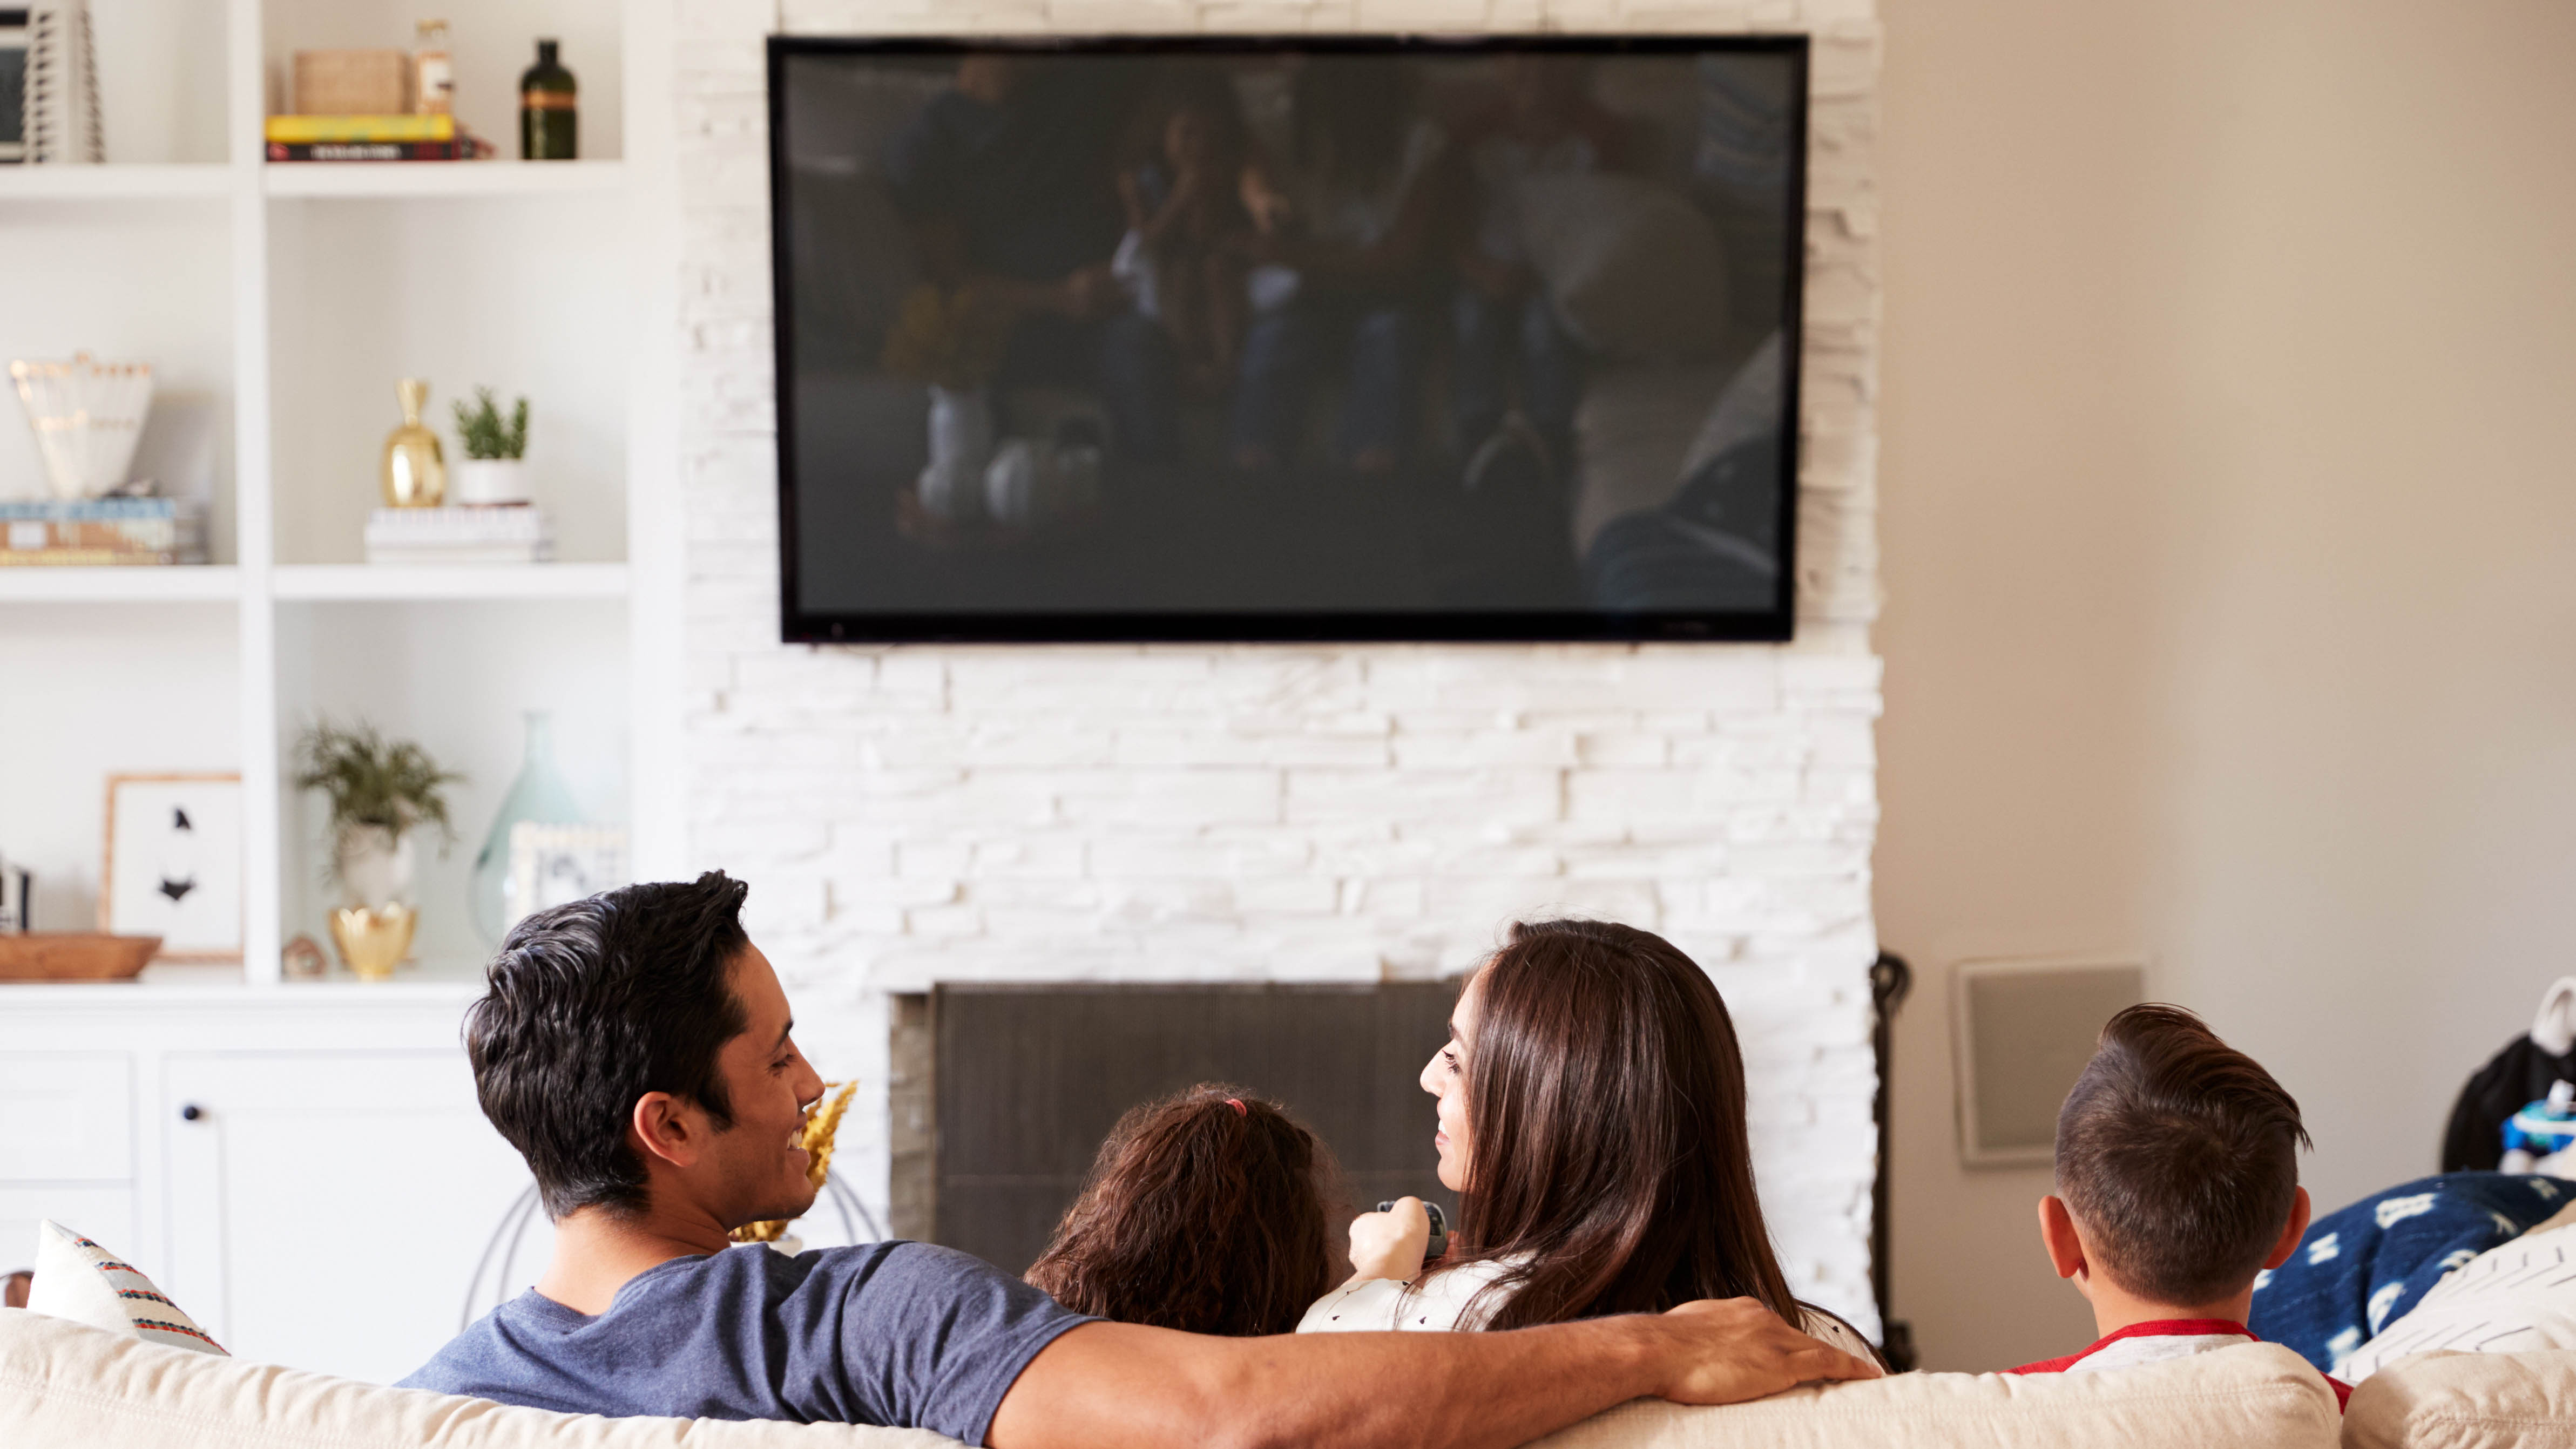 צפייה משפחתית בטלוויזיה תלויה על הקיר